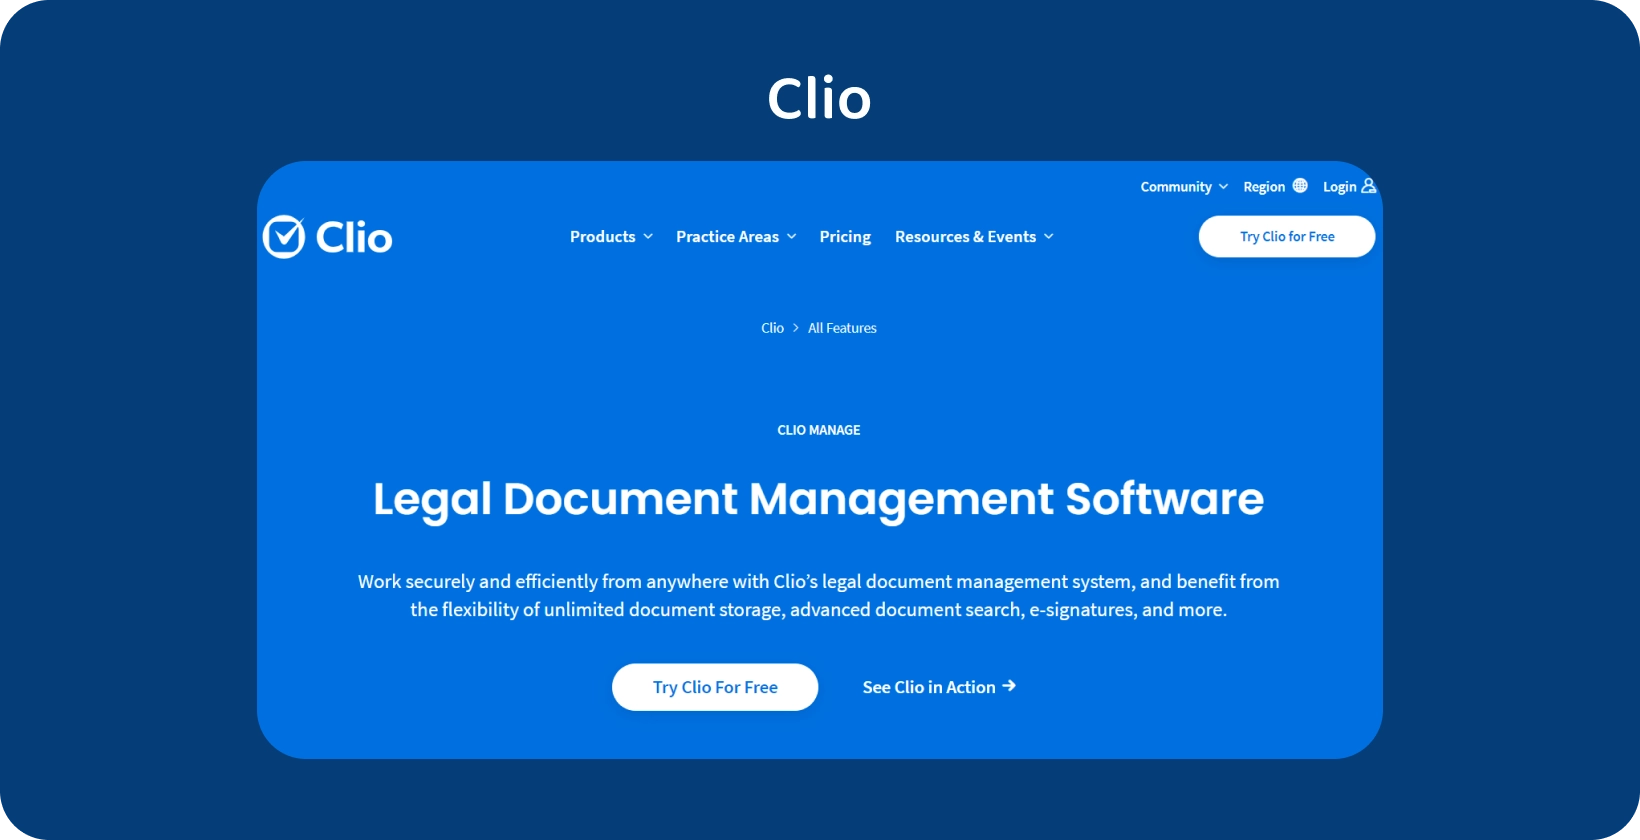 Інтерфейс користувача Clio демонструє програмне забезпечення для управління юридичними документами, що оптимізує організовану роботу з документами.